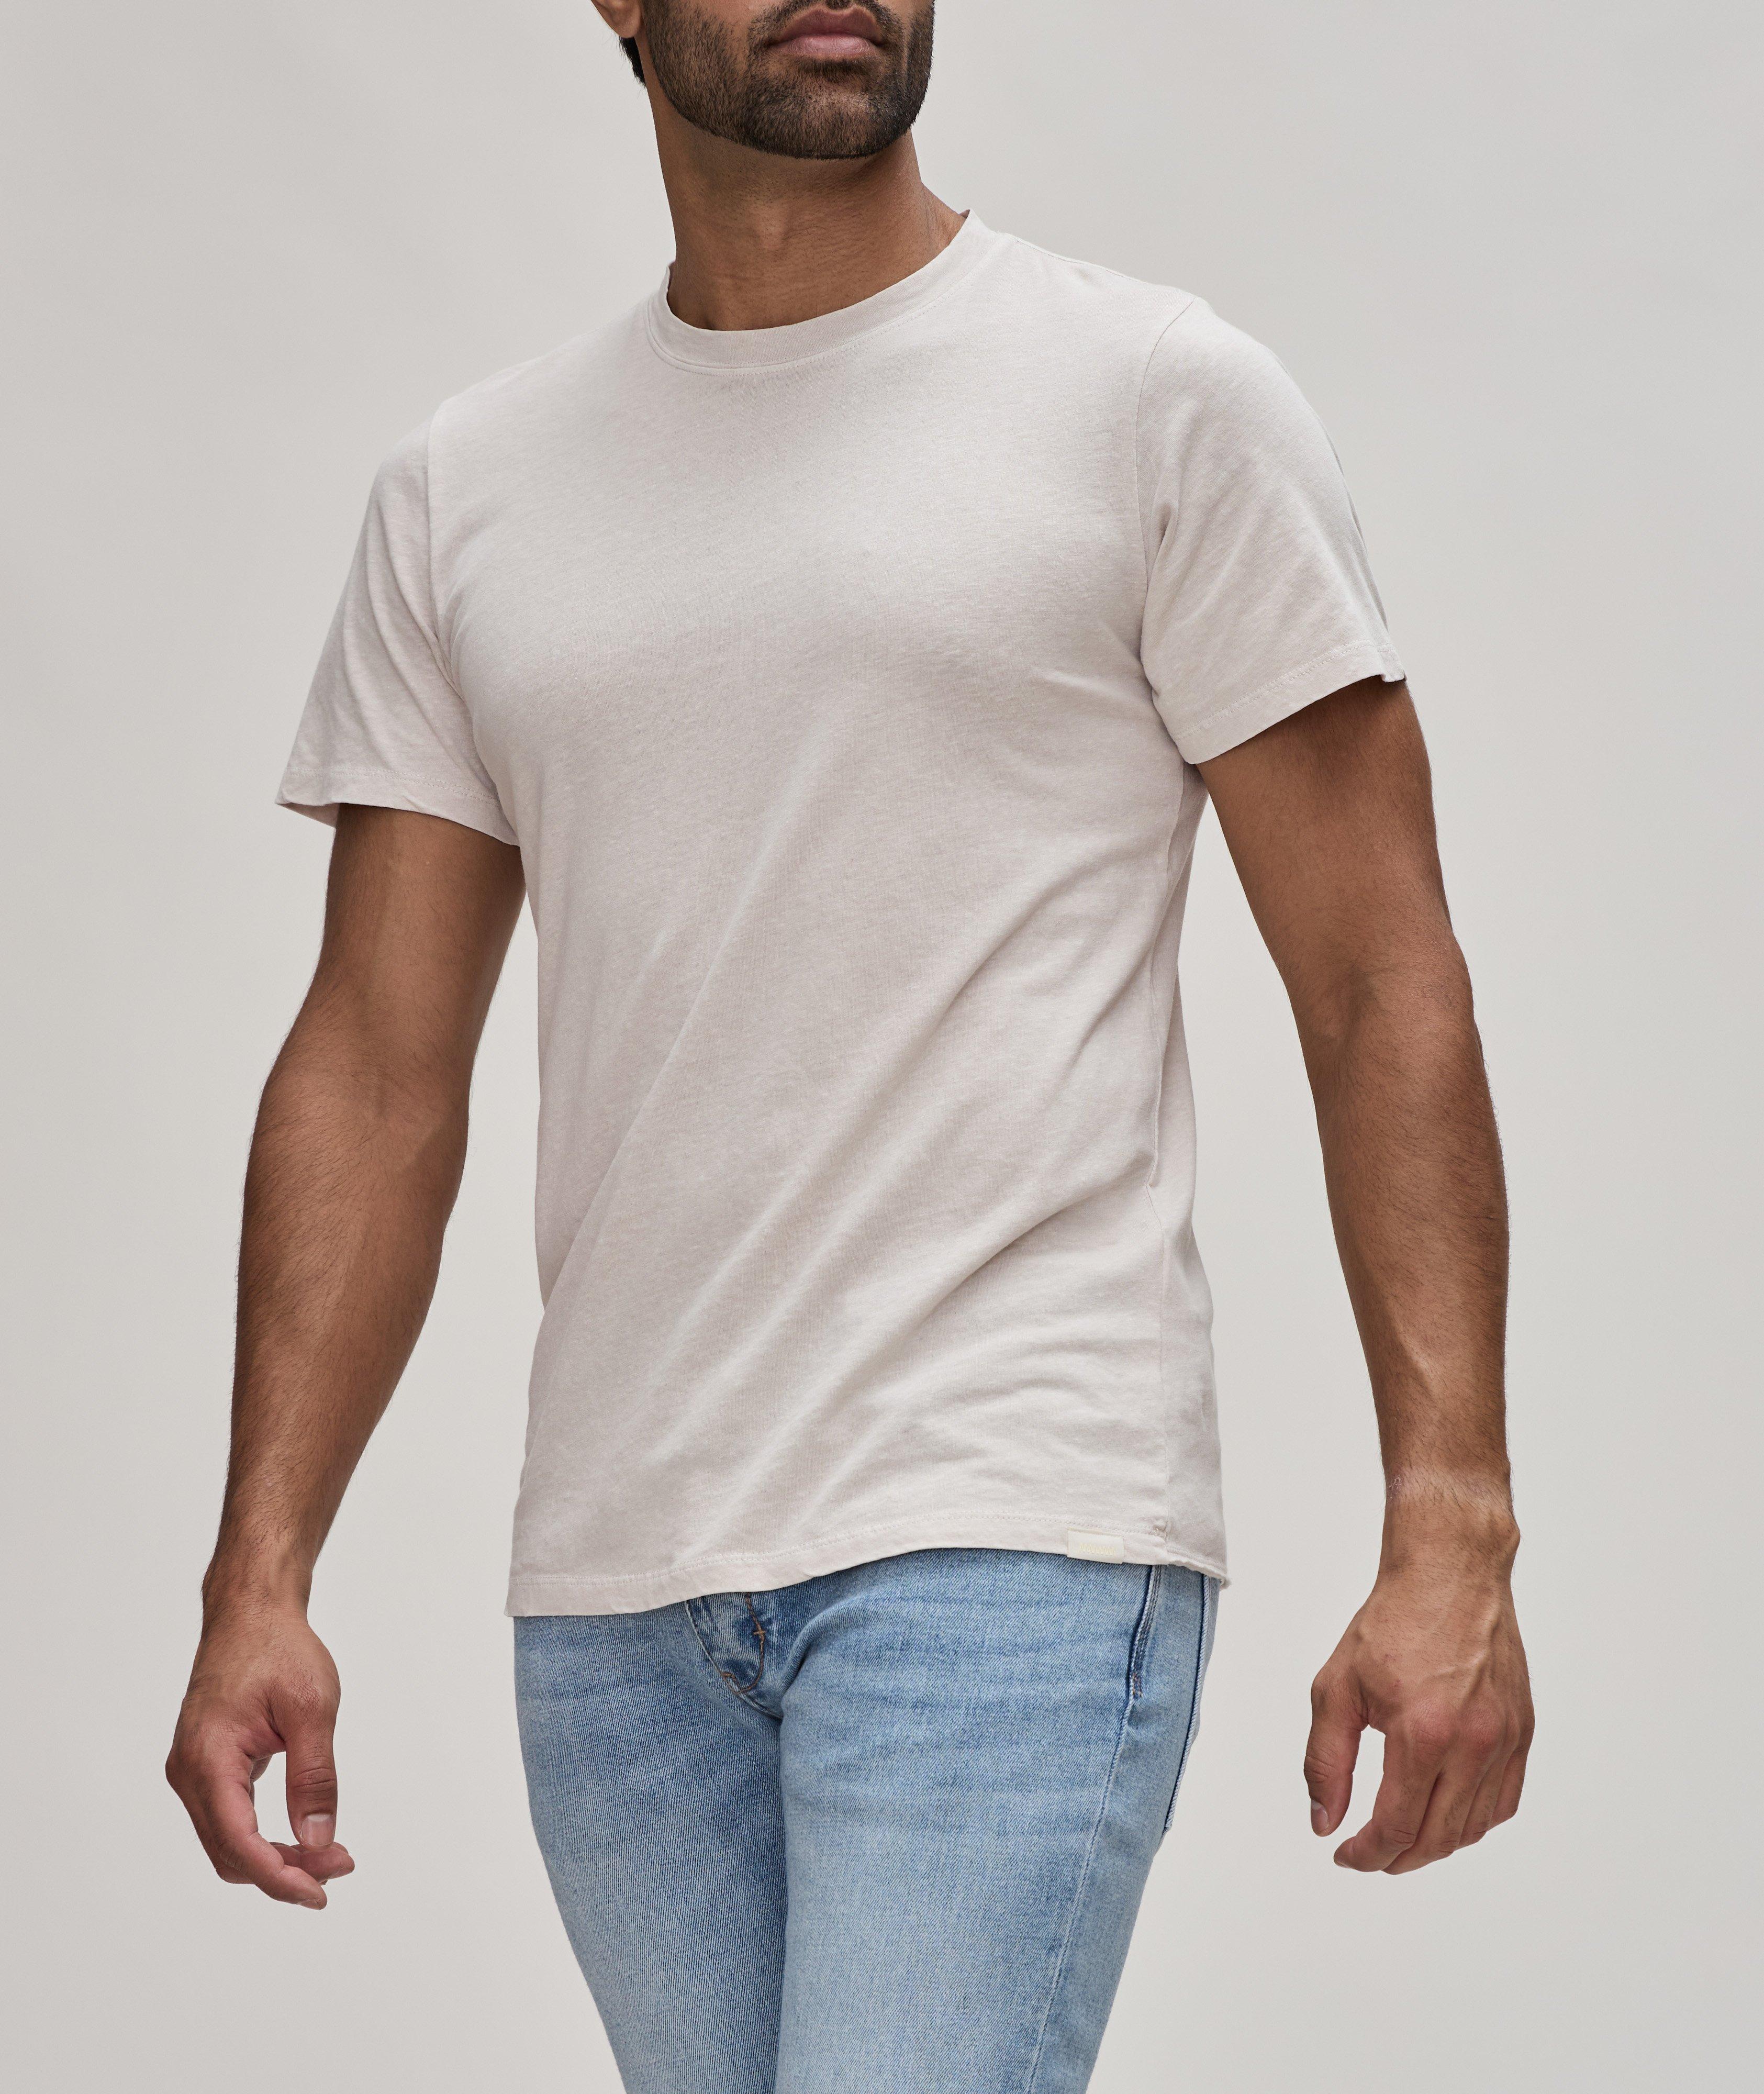 Cotton-Linen Layer T-Shirt